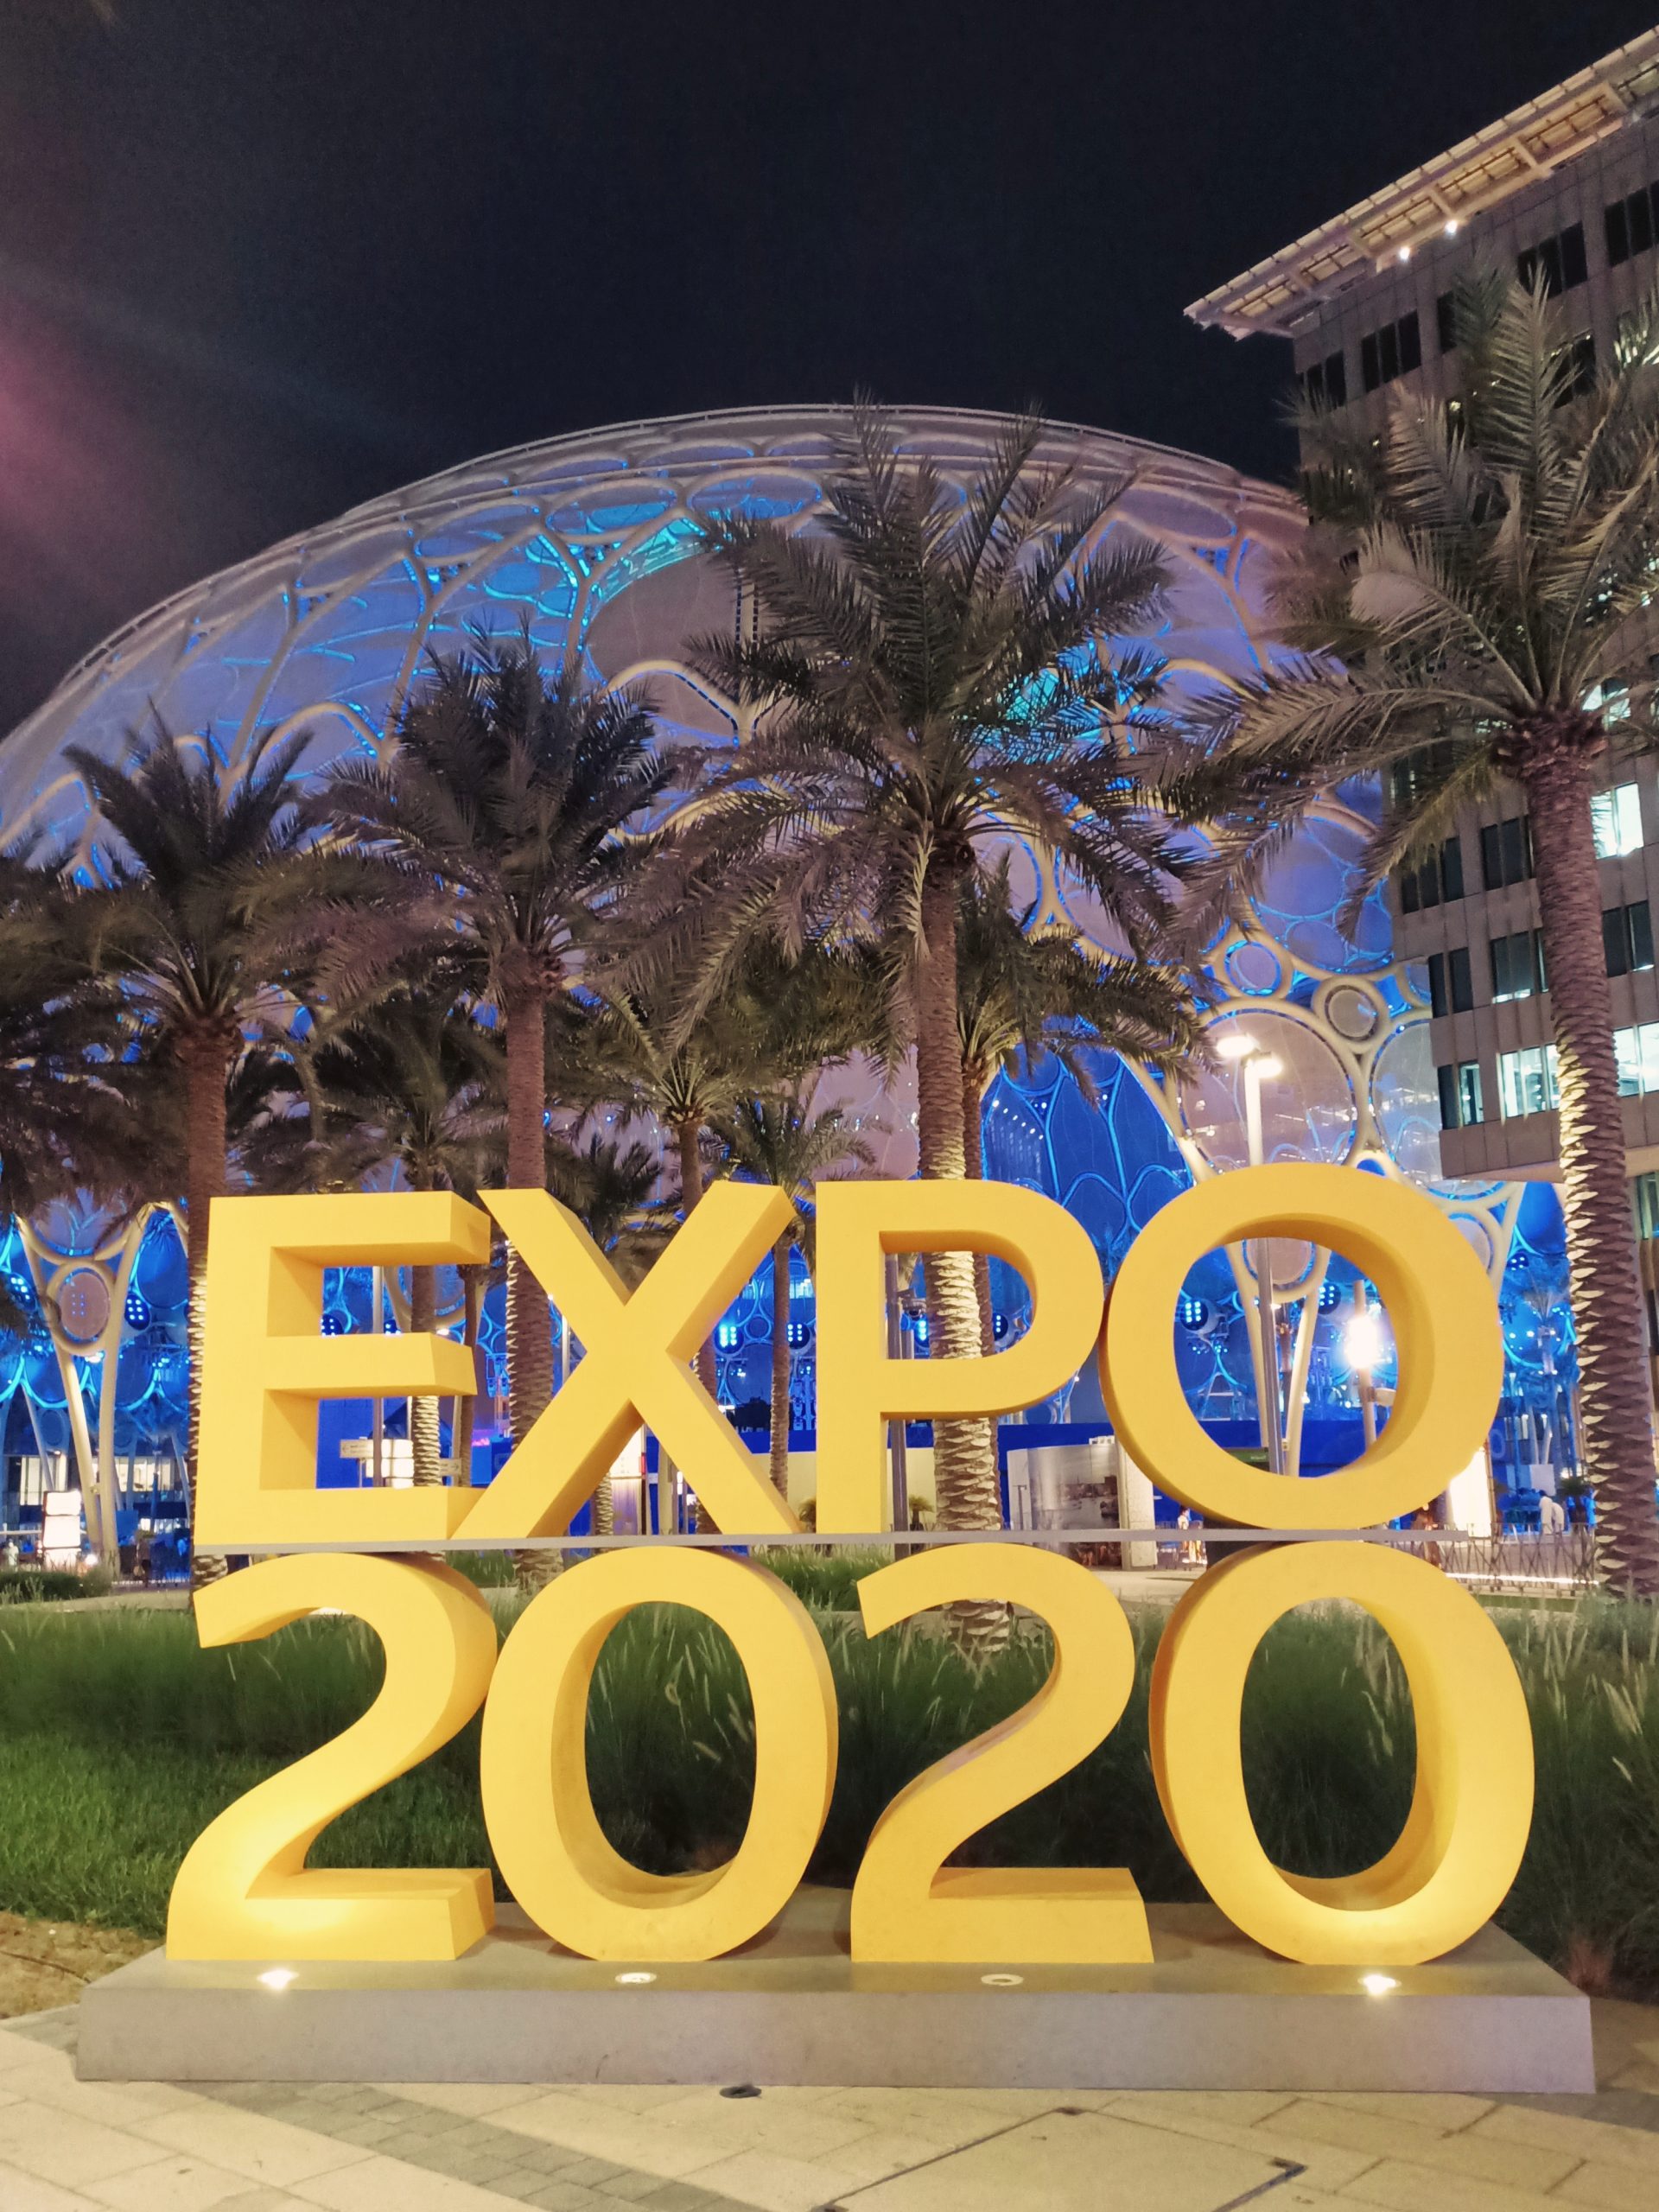 Quelques conseils pratiques pour visiter l‘Expo 2020 à Dubai.